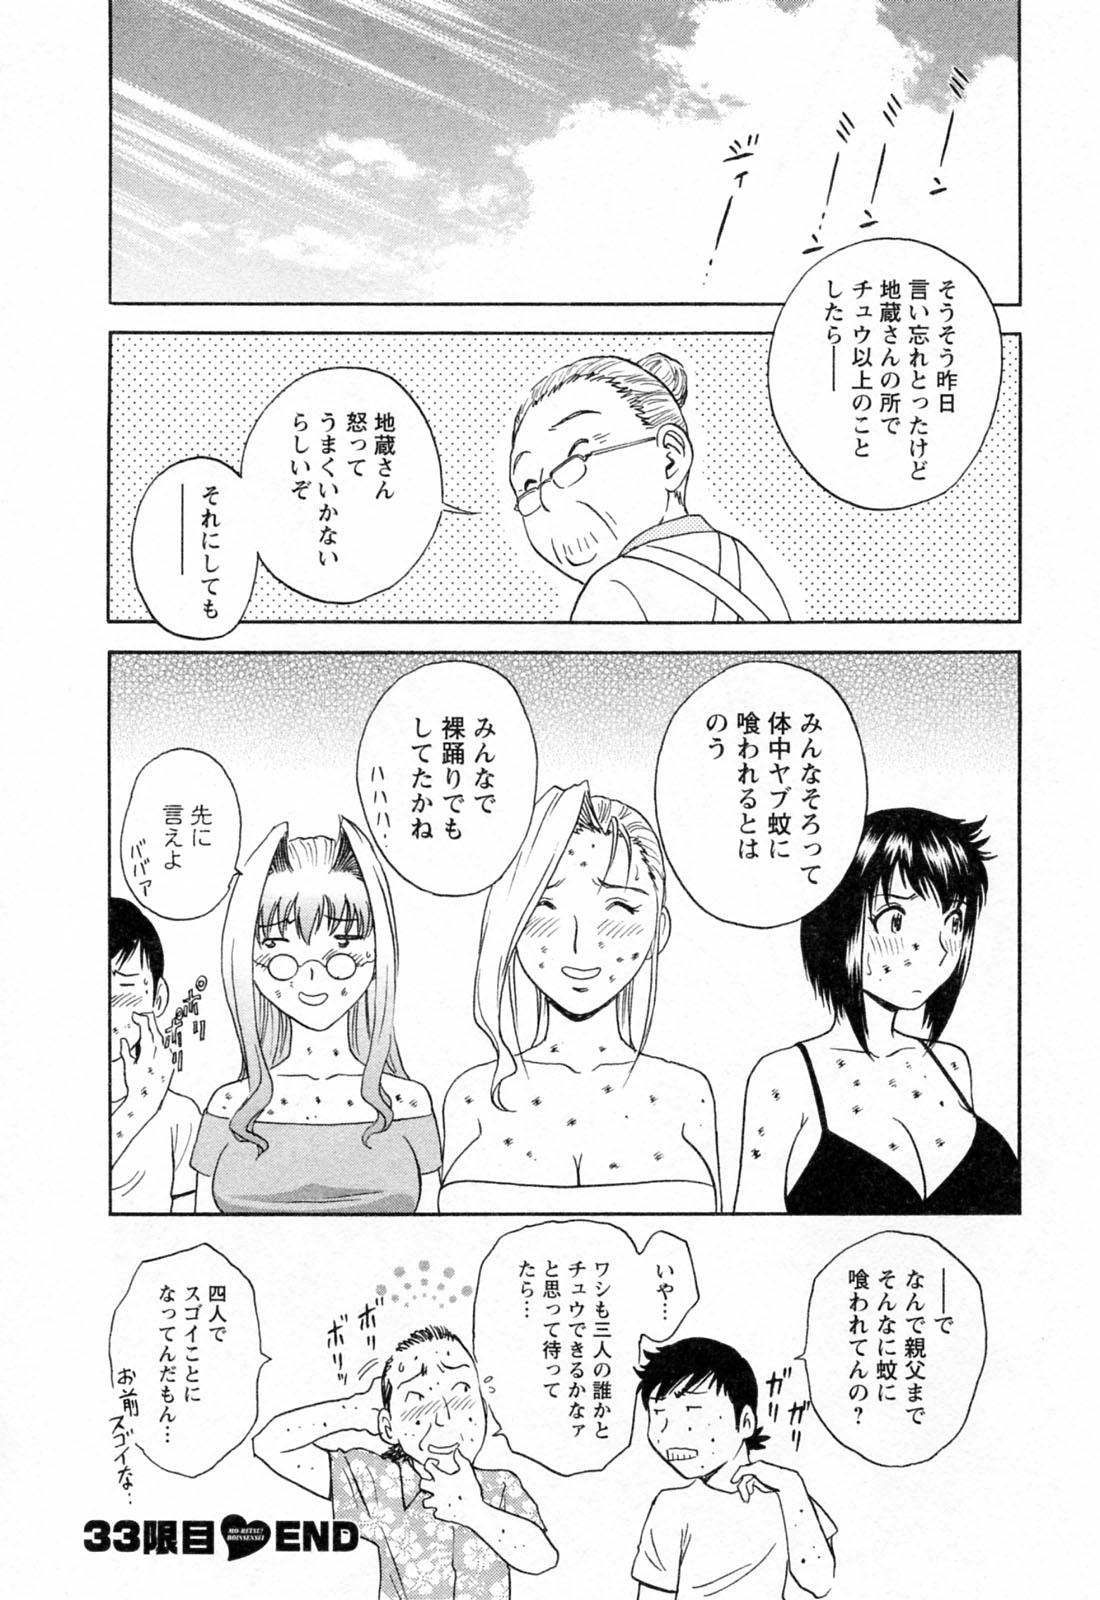 [Hidemaru] Mo-Retsu! Boin Sensei (Boing Boing Teacher) Vol.4 133